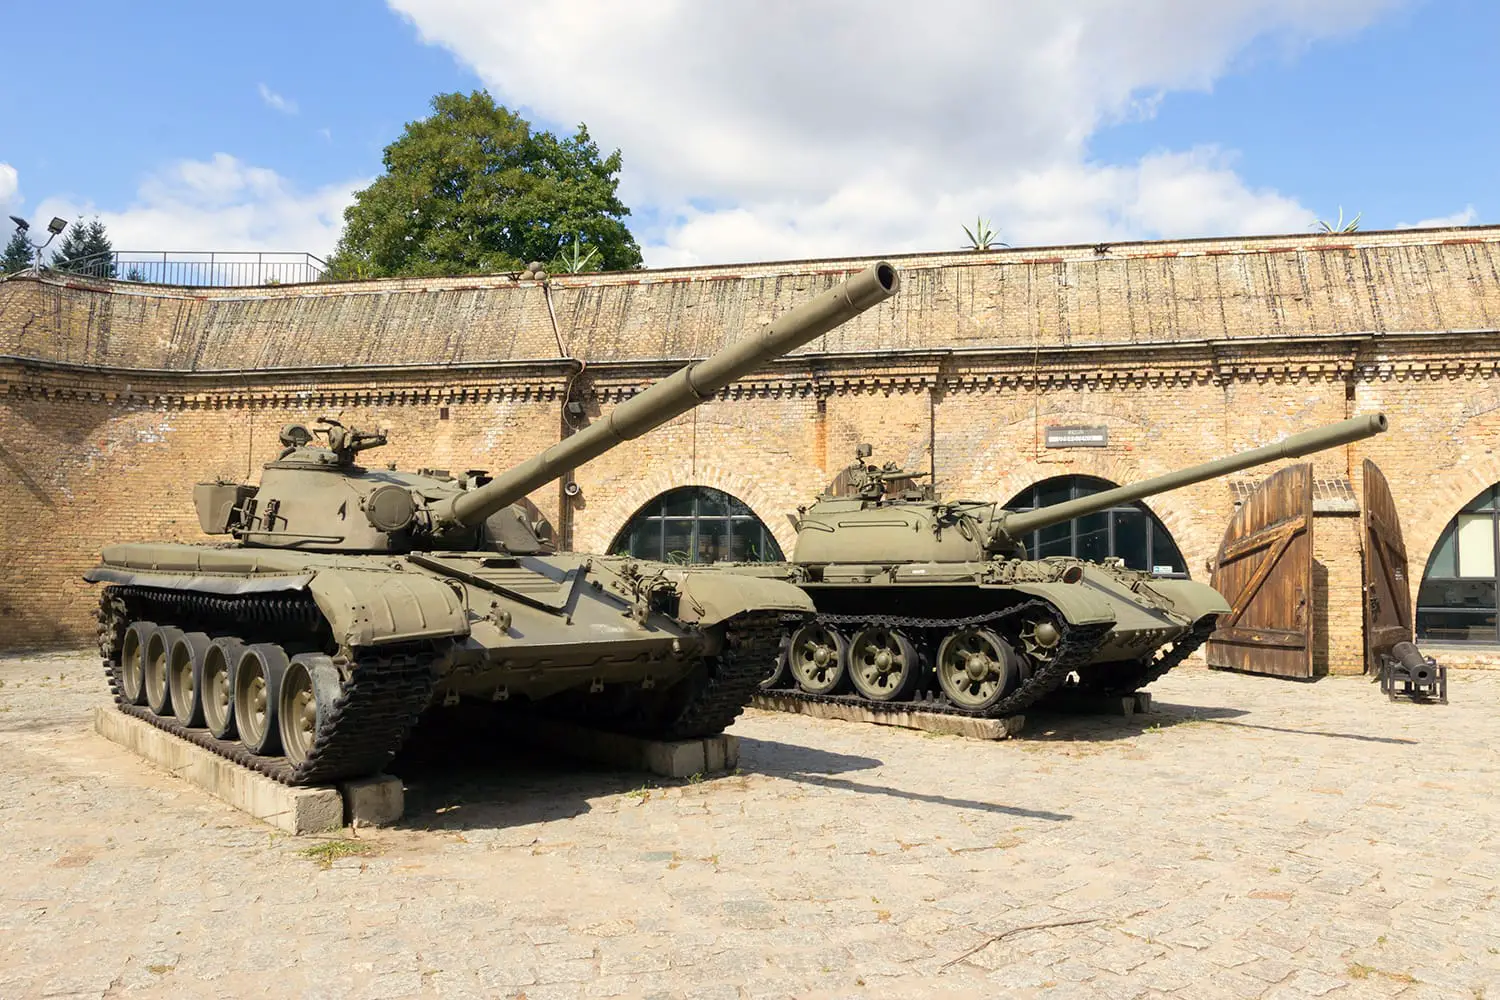 Διατηρημένα άρματα μάχης T-72 και T-55 που εκτίθενται μπροστά από το Μουσείο Στρατού του Πόζναν.